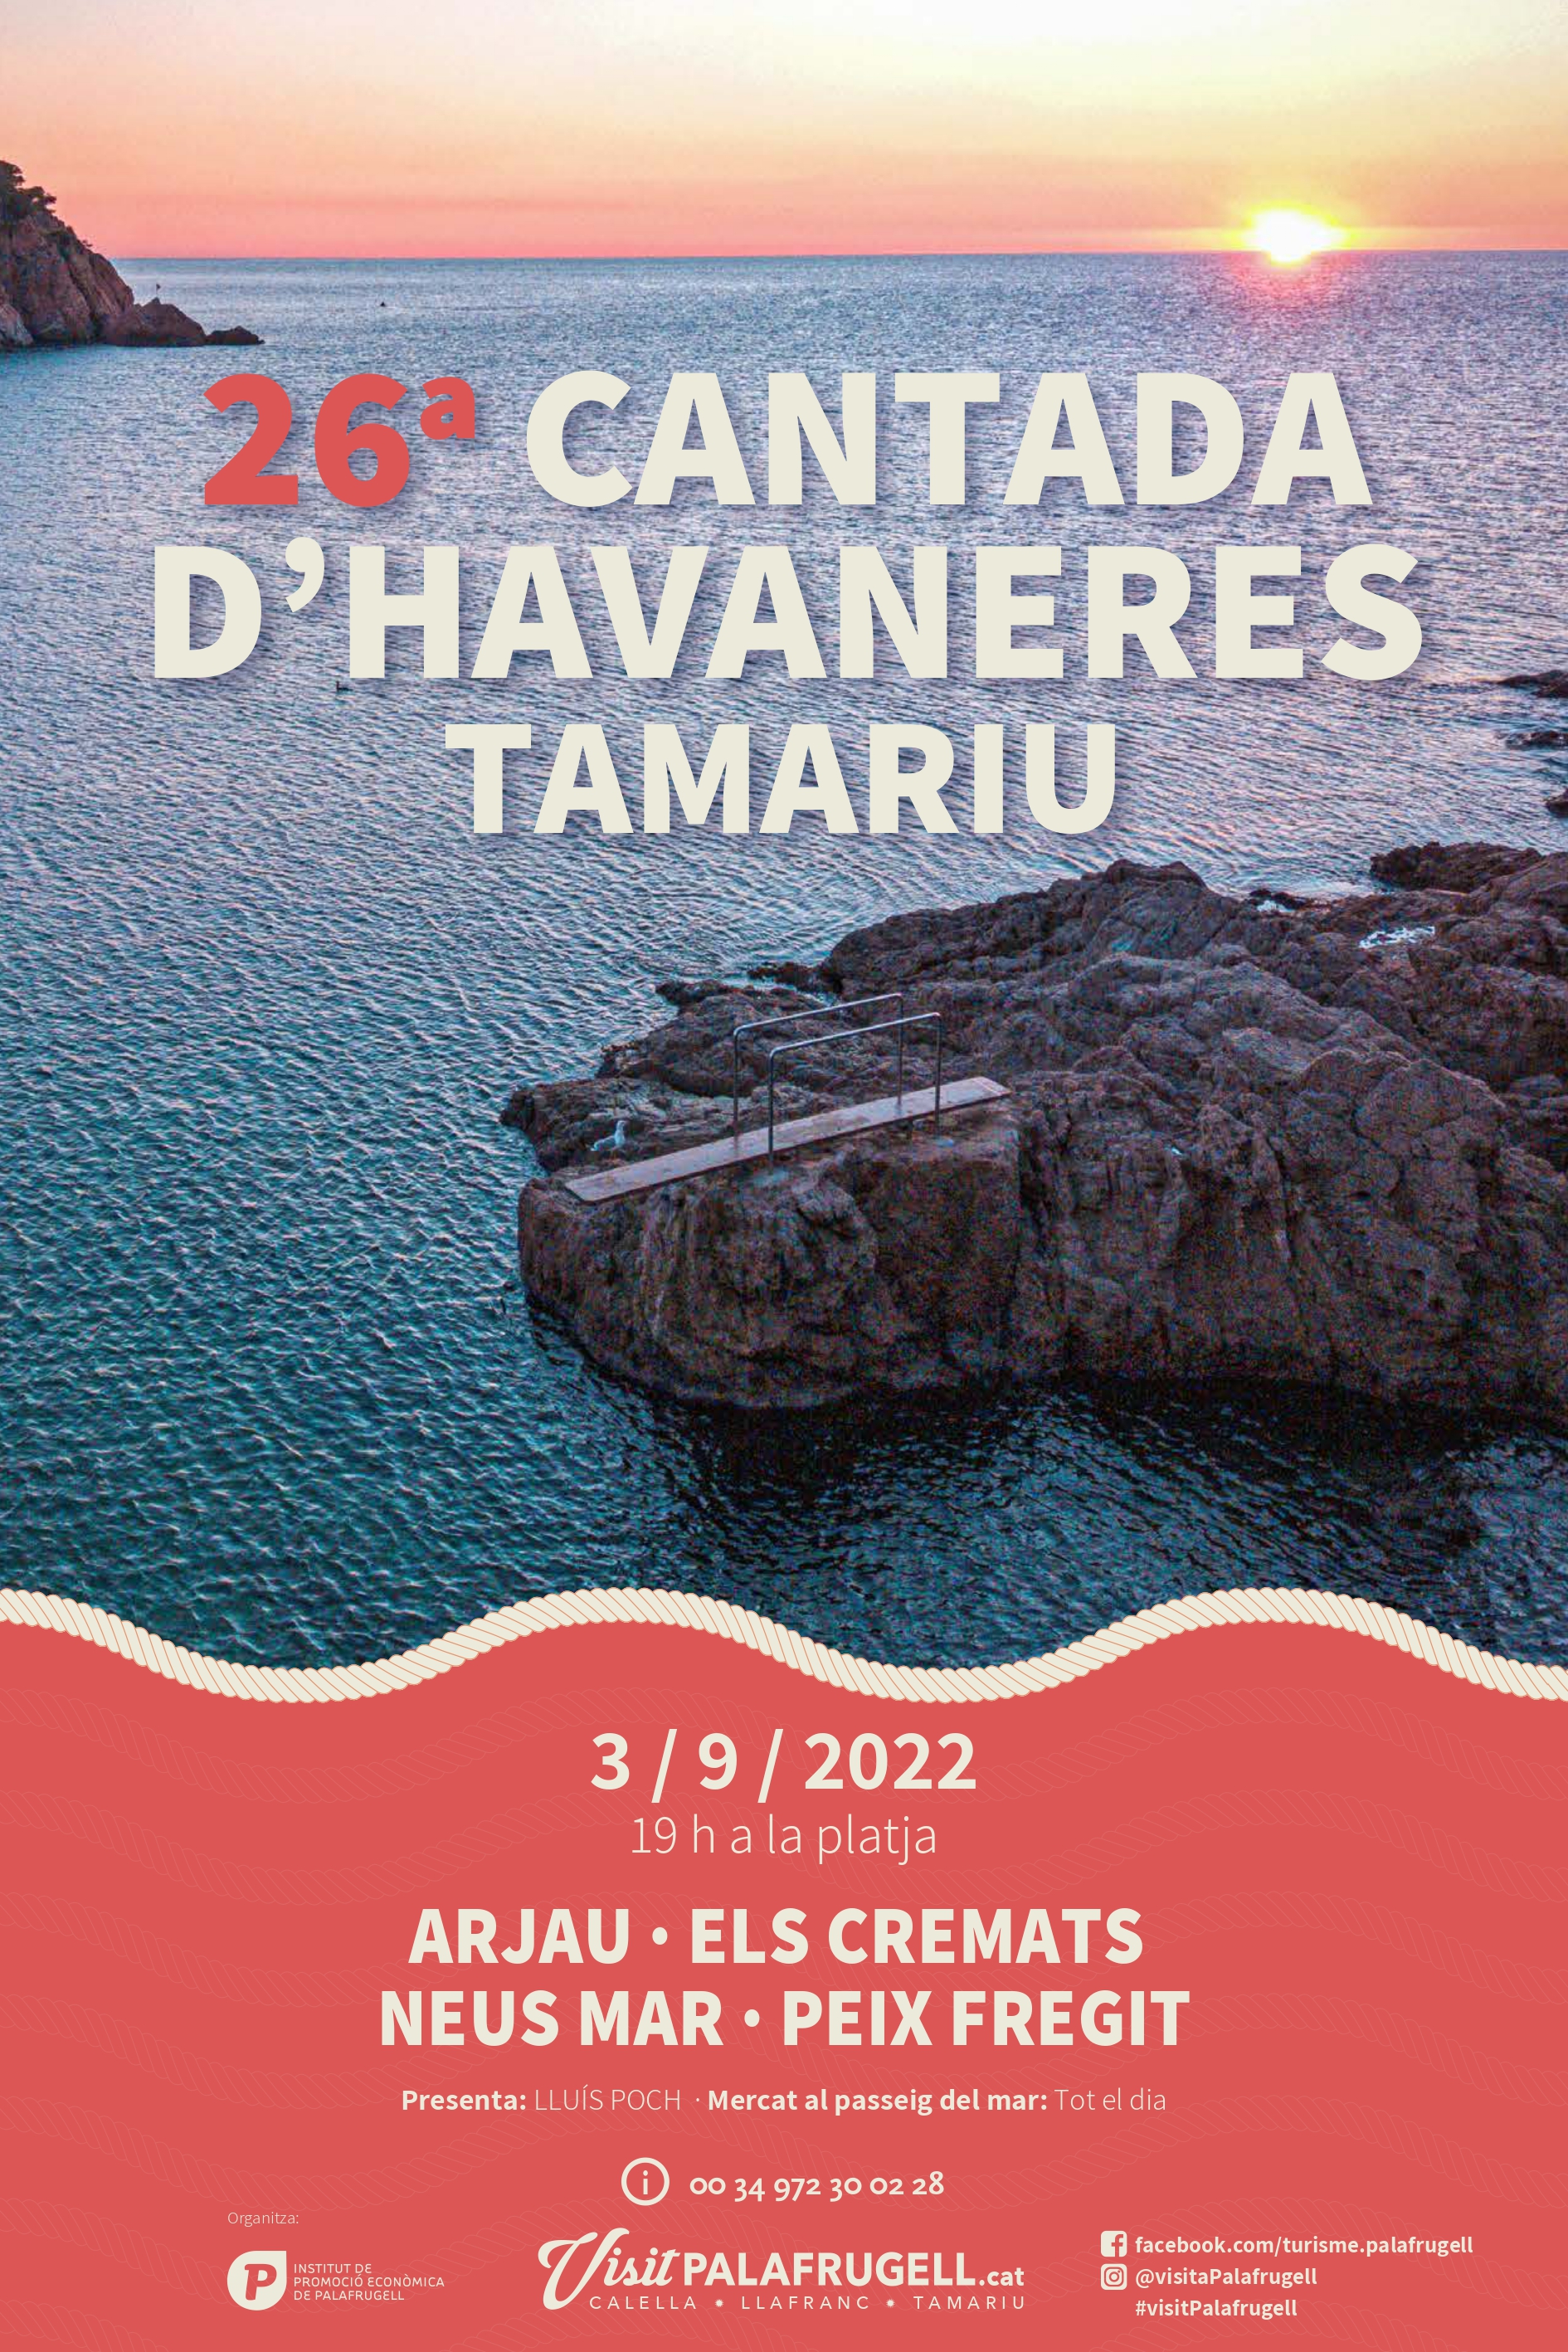 Cantada Havaneres Tamariu, IPEP, Ajuntament de Palafrugell